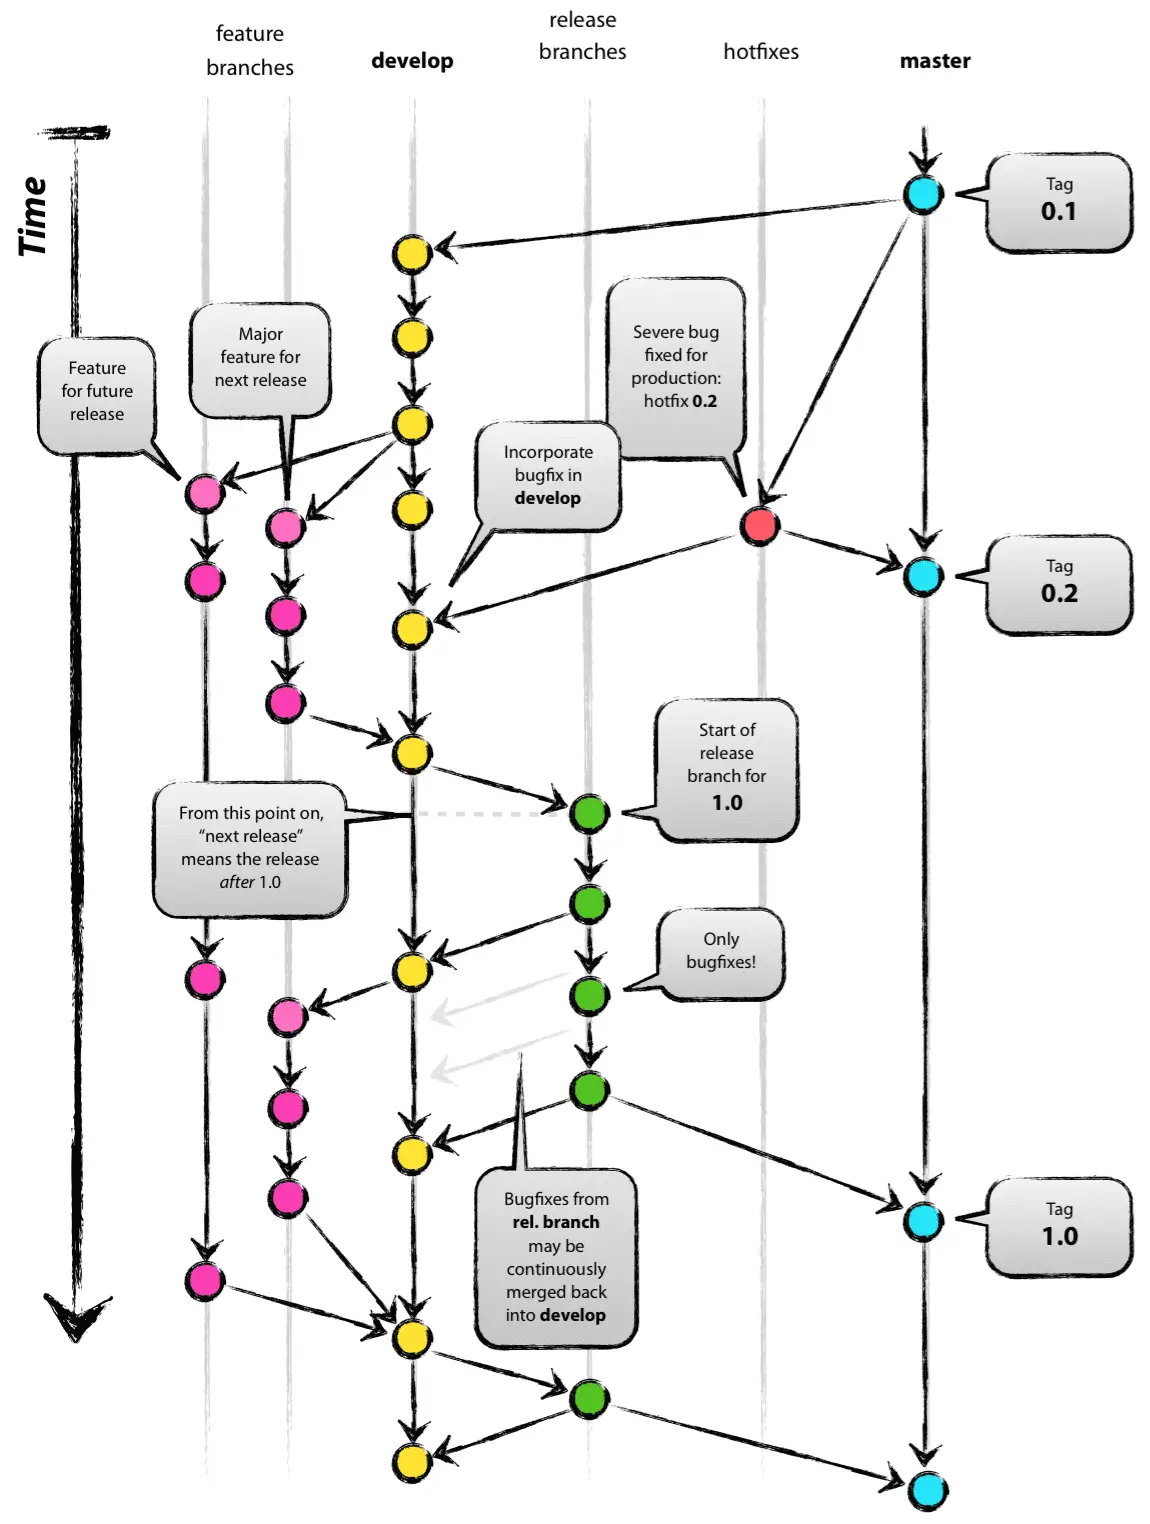 A imagem mostra o diagrama do Git flow. Ele ilustra como diferentes tipos de branches, como feature, hotfix e release, são criadas e mescladas para desenvolver, testar e lançar software de forma eficiente. As setas no diagrama indicam o fluxo do código entre as diferentes branches.